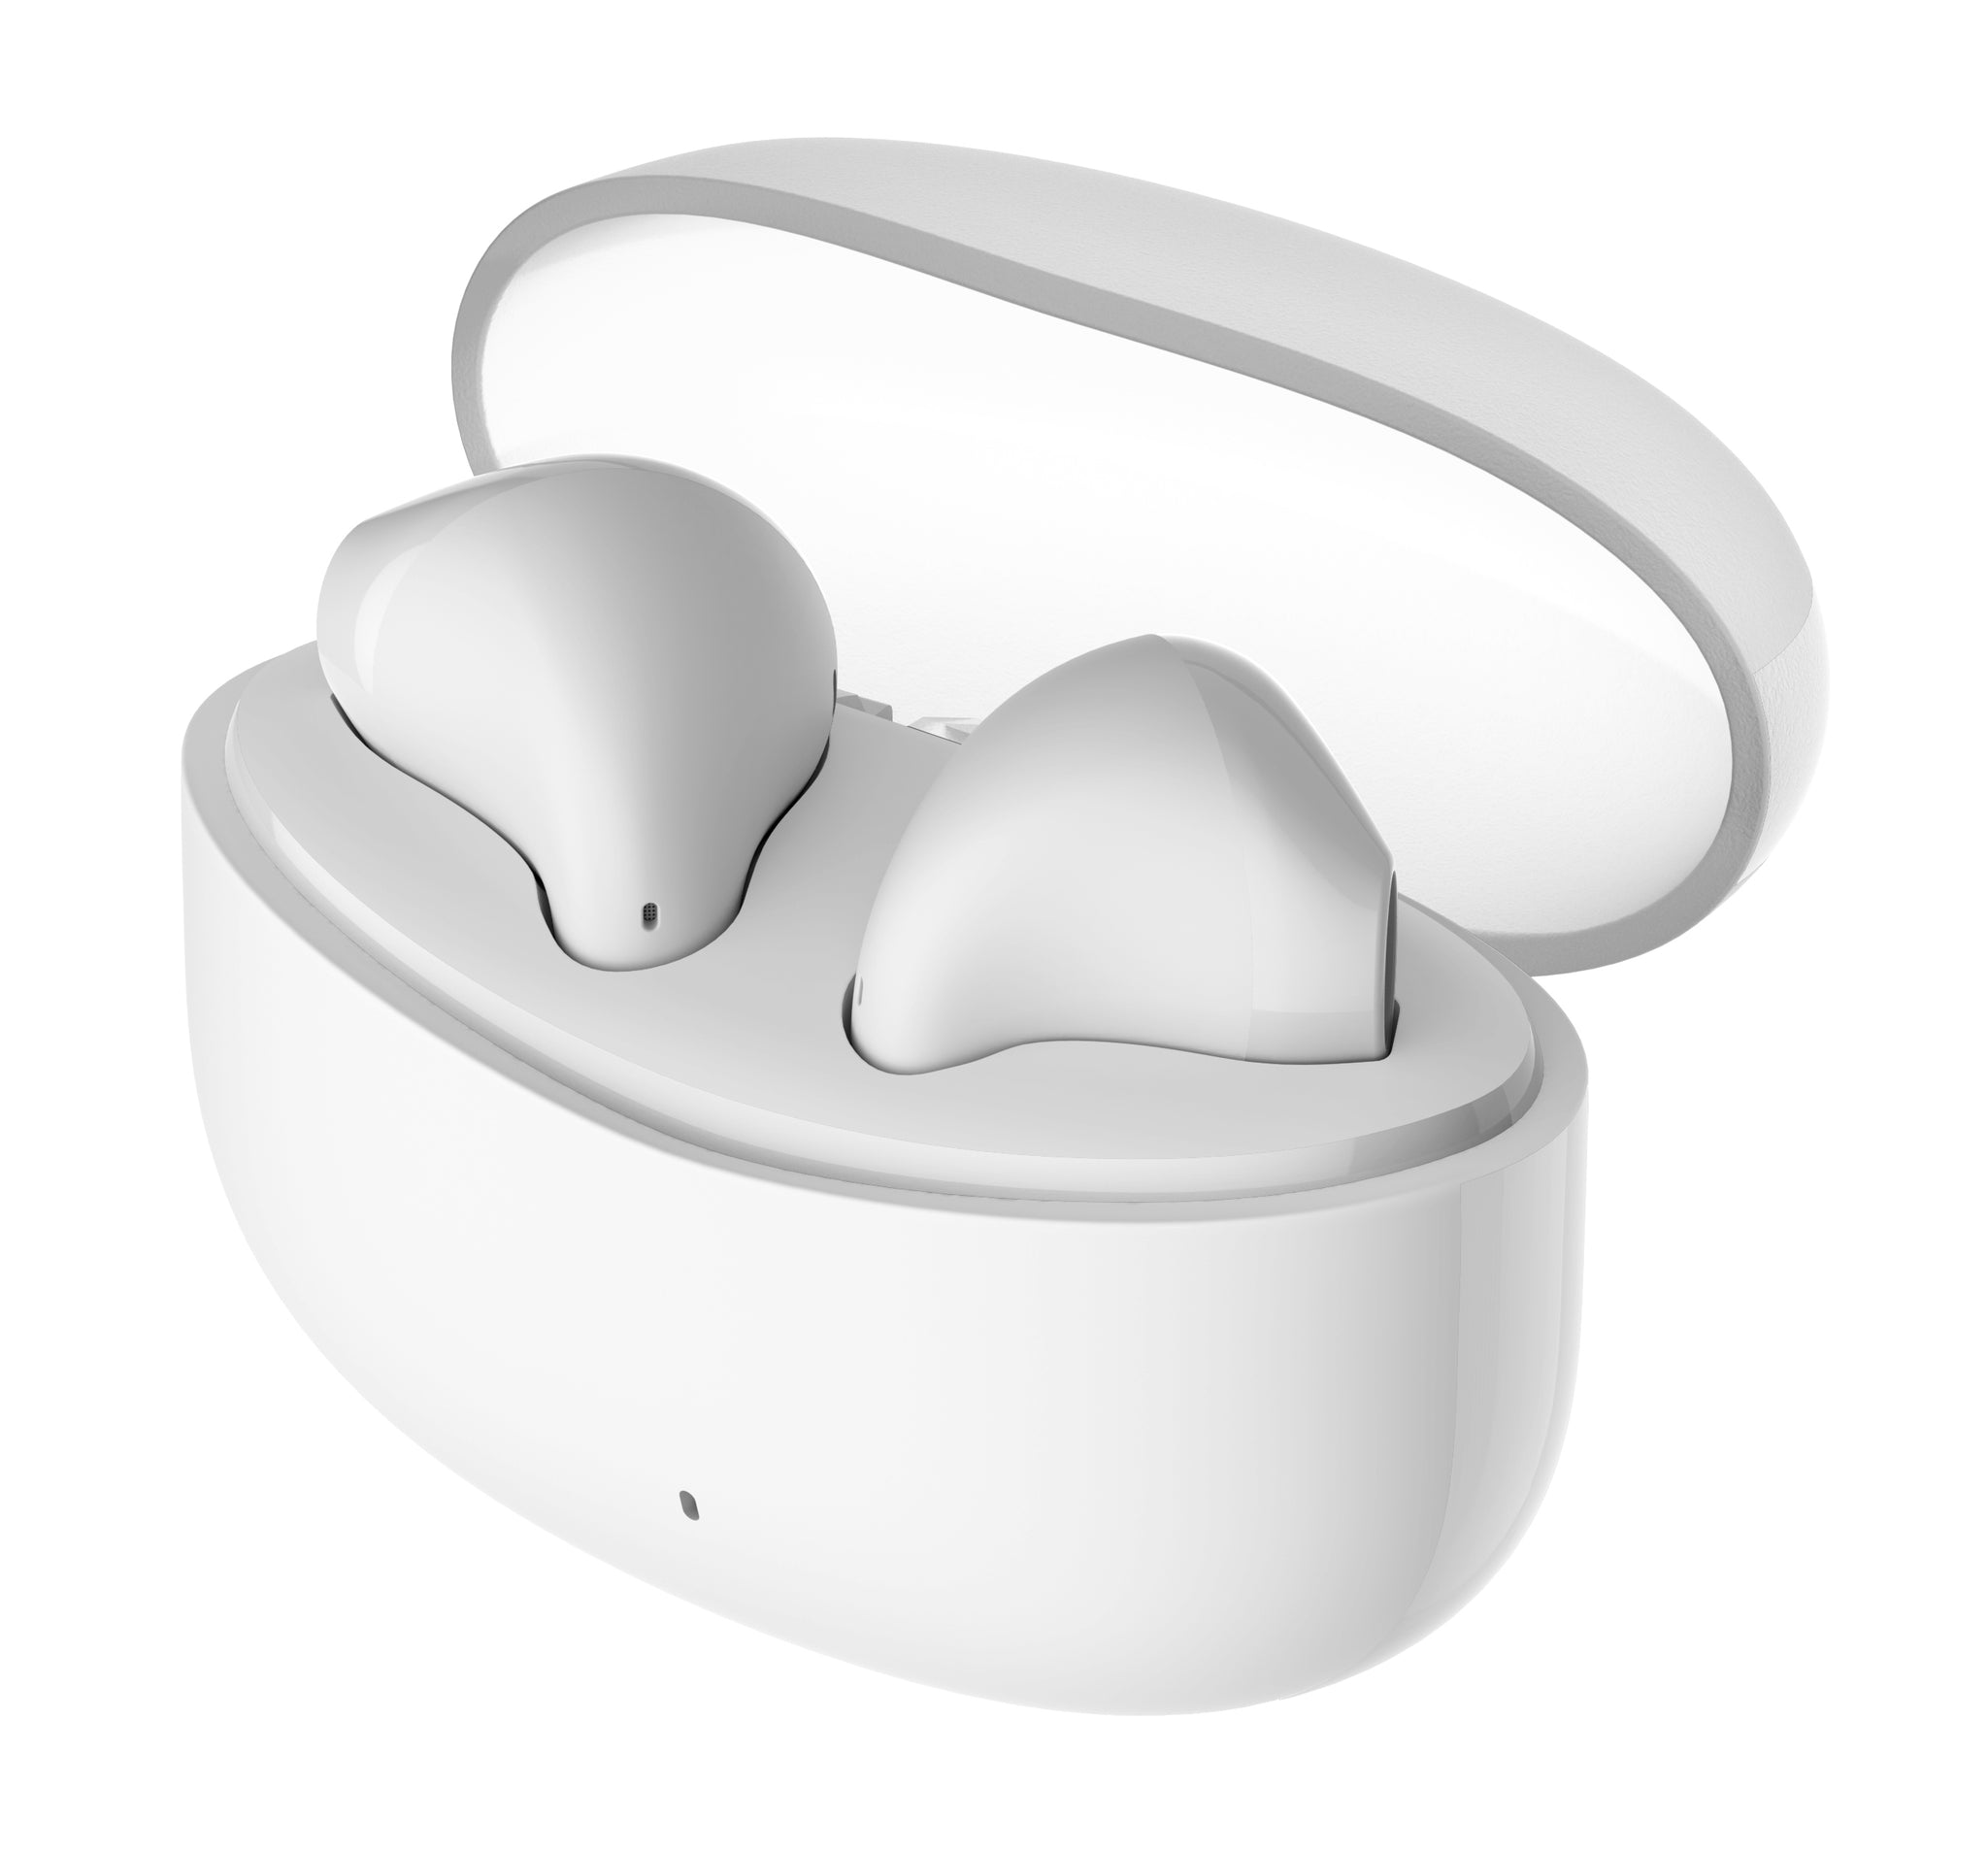 Edifier X2s True Wireless Semi-In-Ear Bluetooth Earbuds With Mic - White